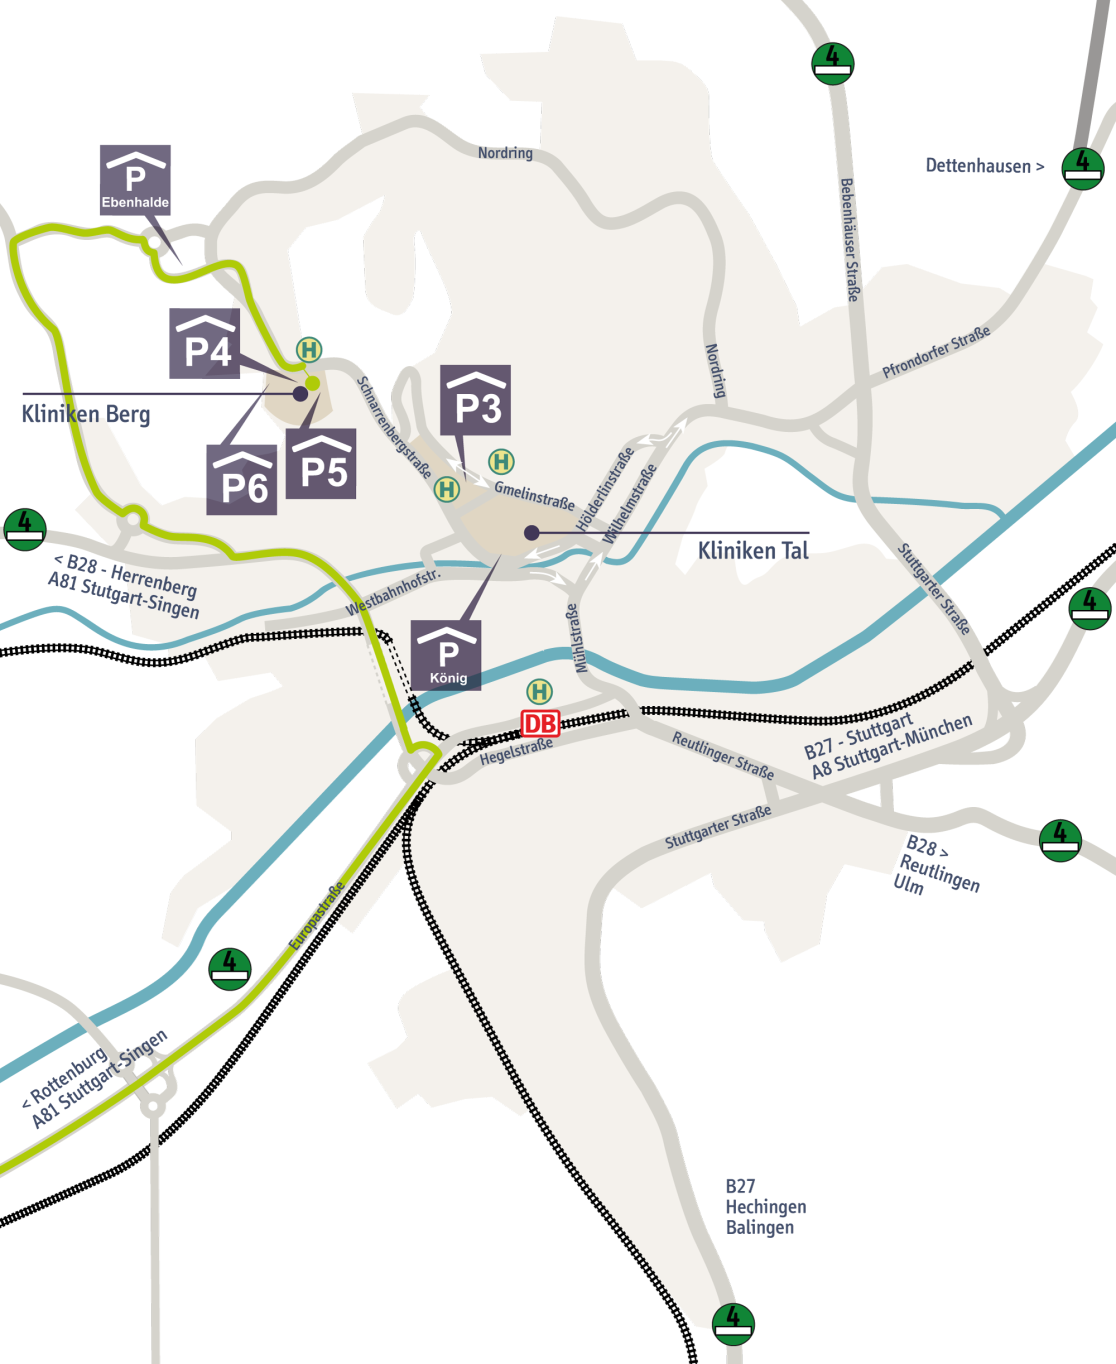 Stadtplan mit Anfahrtsroute über die A 81 Ausfahrt Rottenburg